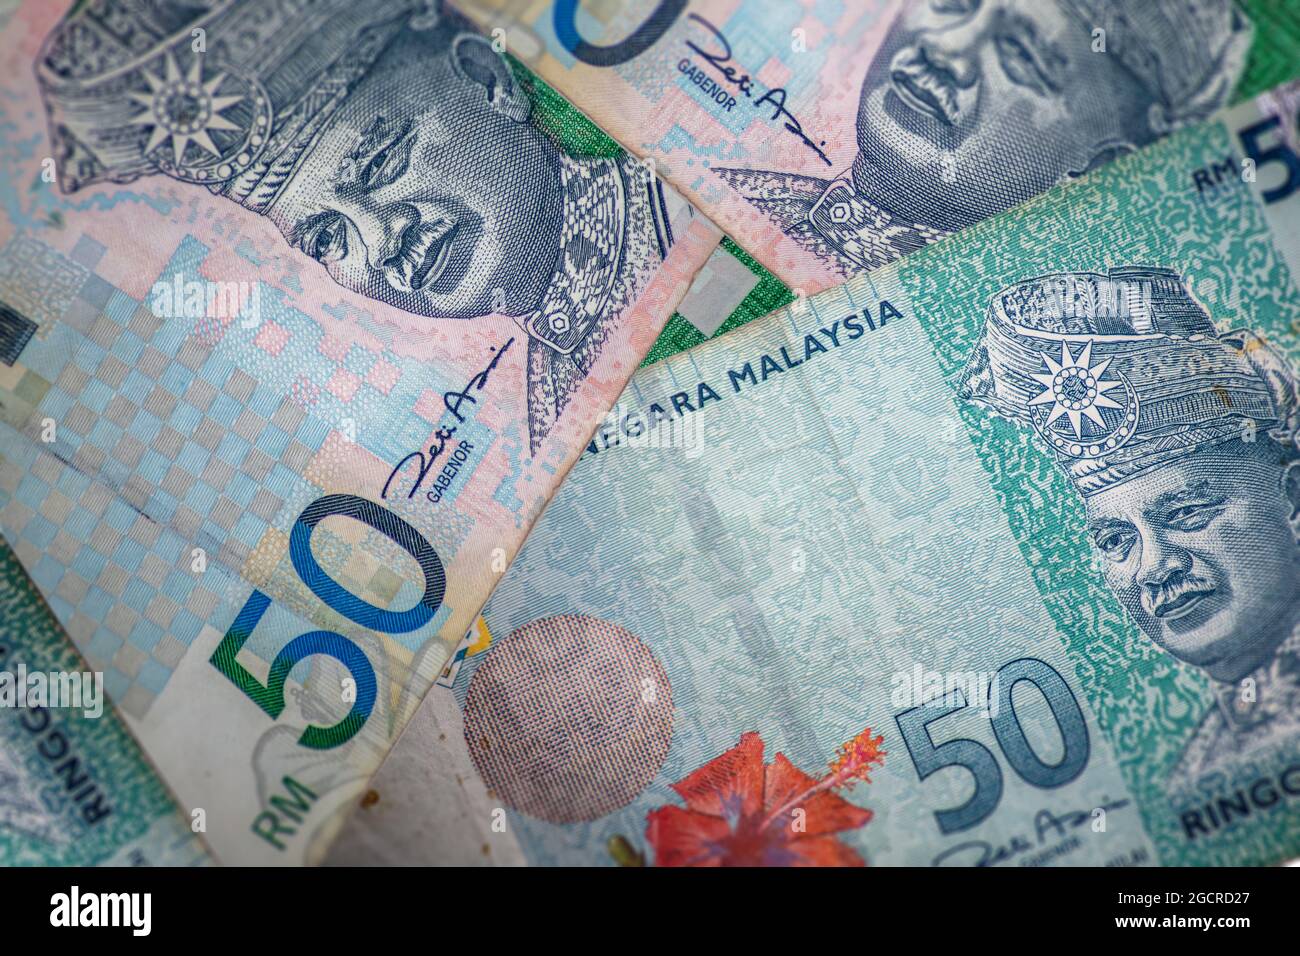 Un gros plan sur l'ancien et le nouveau billet de banque de 50 Ringgit Malaisie. Un groupe de cinquante notes ringgit, la monnaie de la Malaisie. Banque D'Images